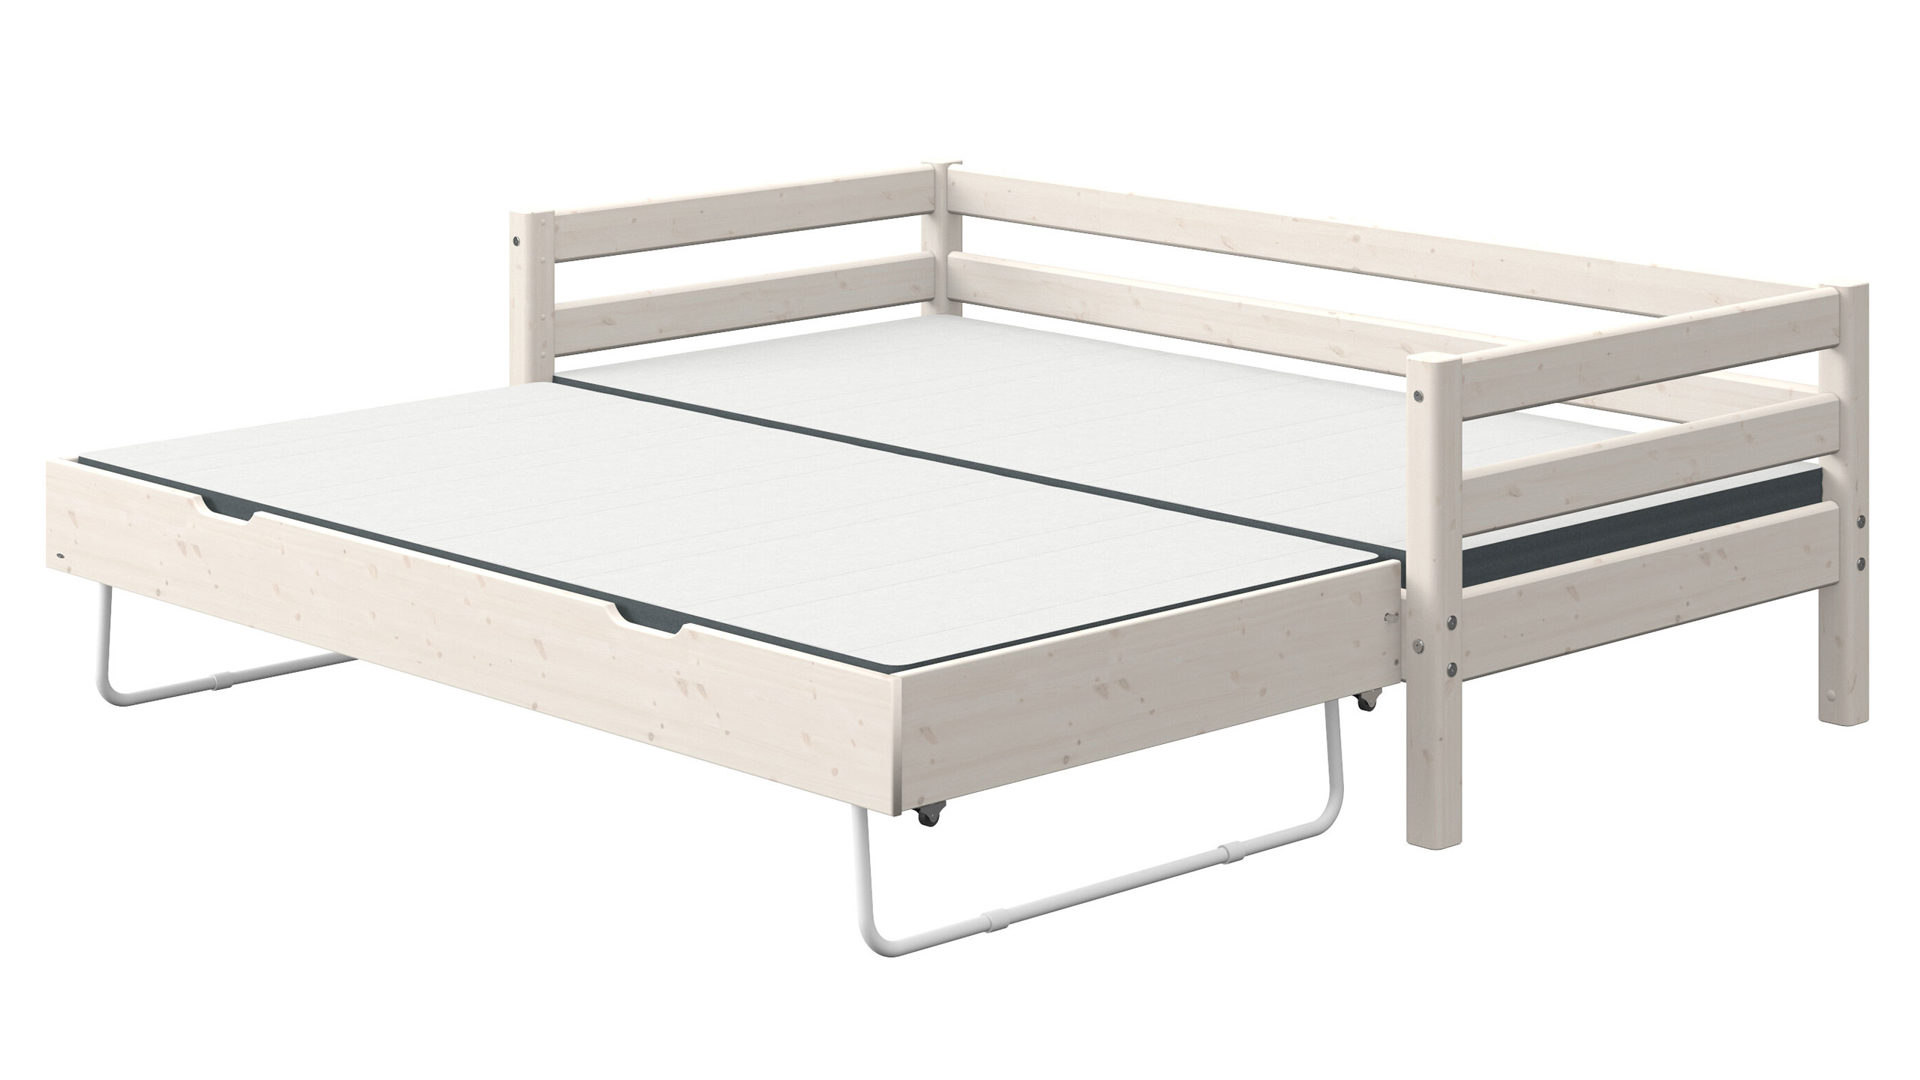 Einzelbett Flexa aus Holz in Weiß FLEXA Classic Bett mit Absturzsicherung und Ausziehbett 90x190 cm Kiefer weiss lasiert